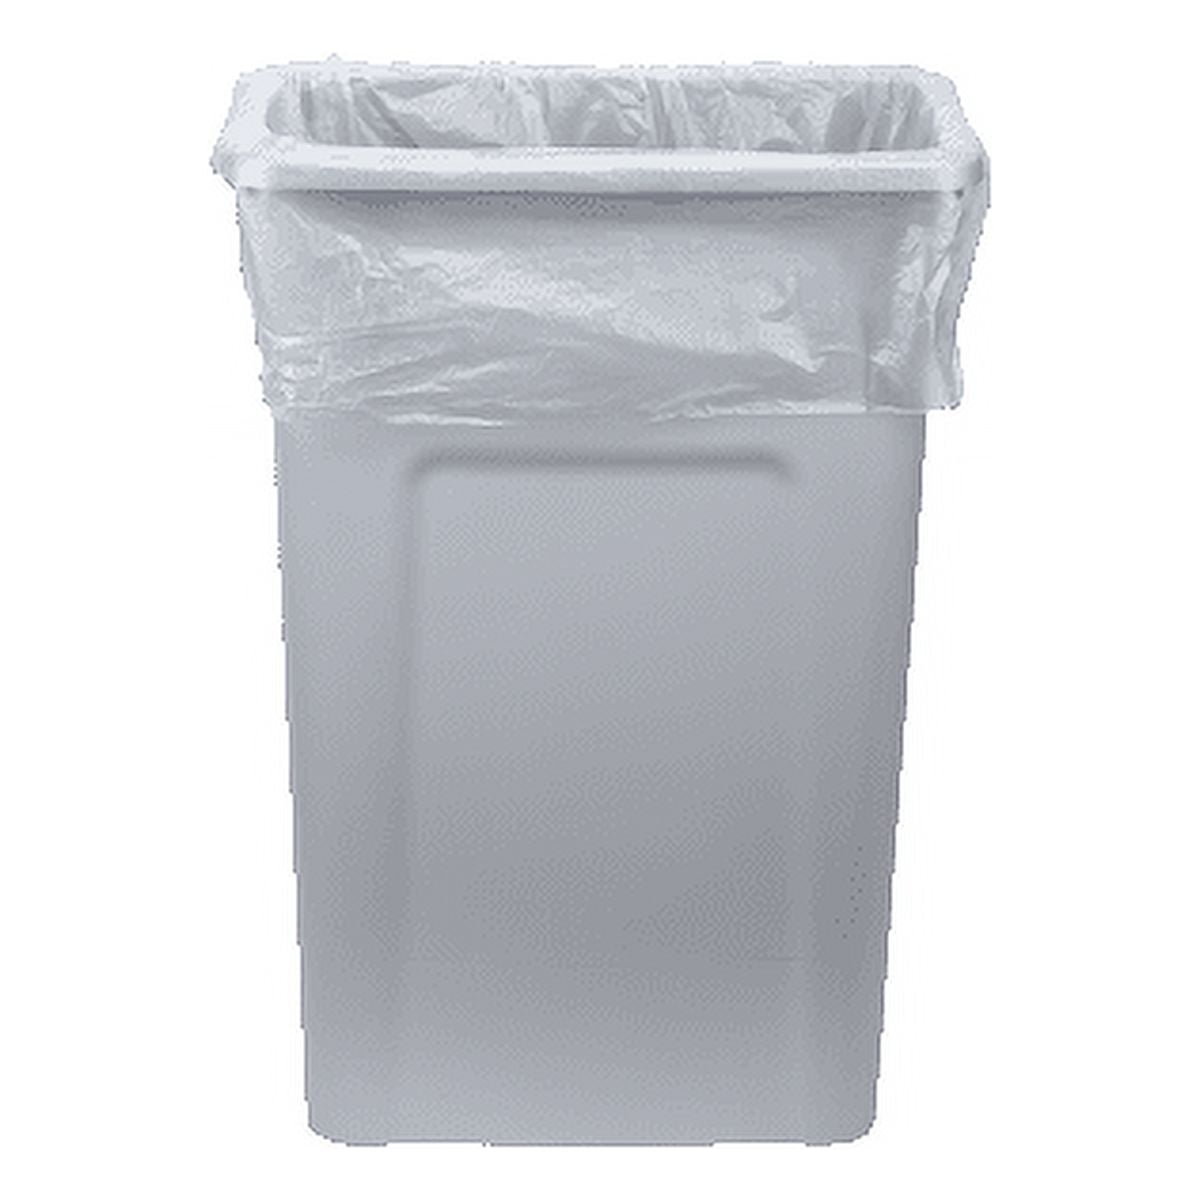 Medline Clear Trash Bag / Can Liner 7 Gallon 1000Ct